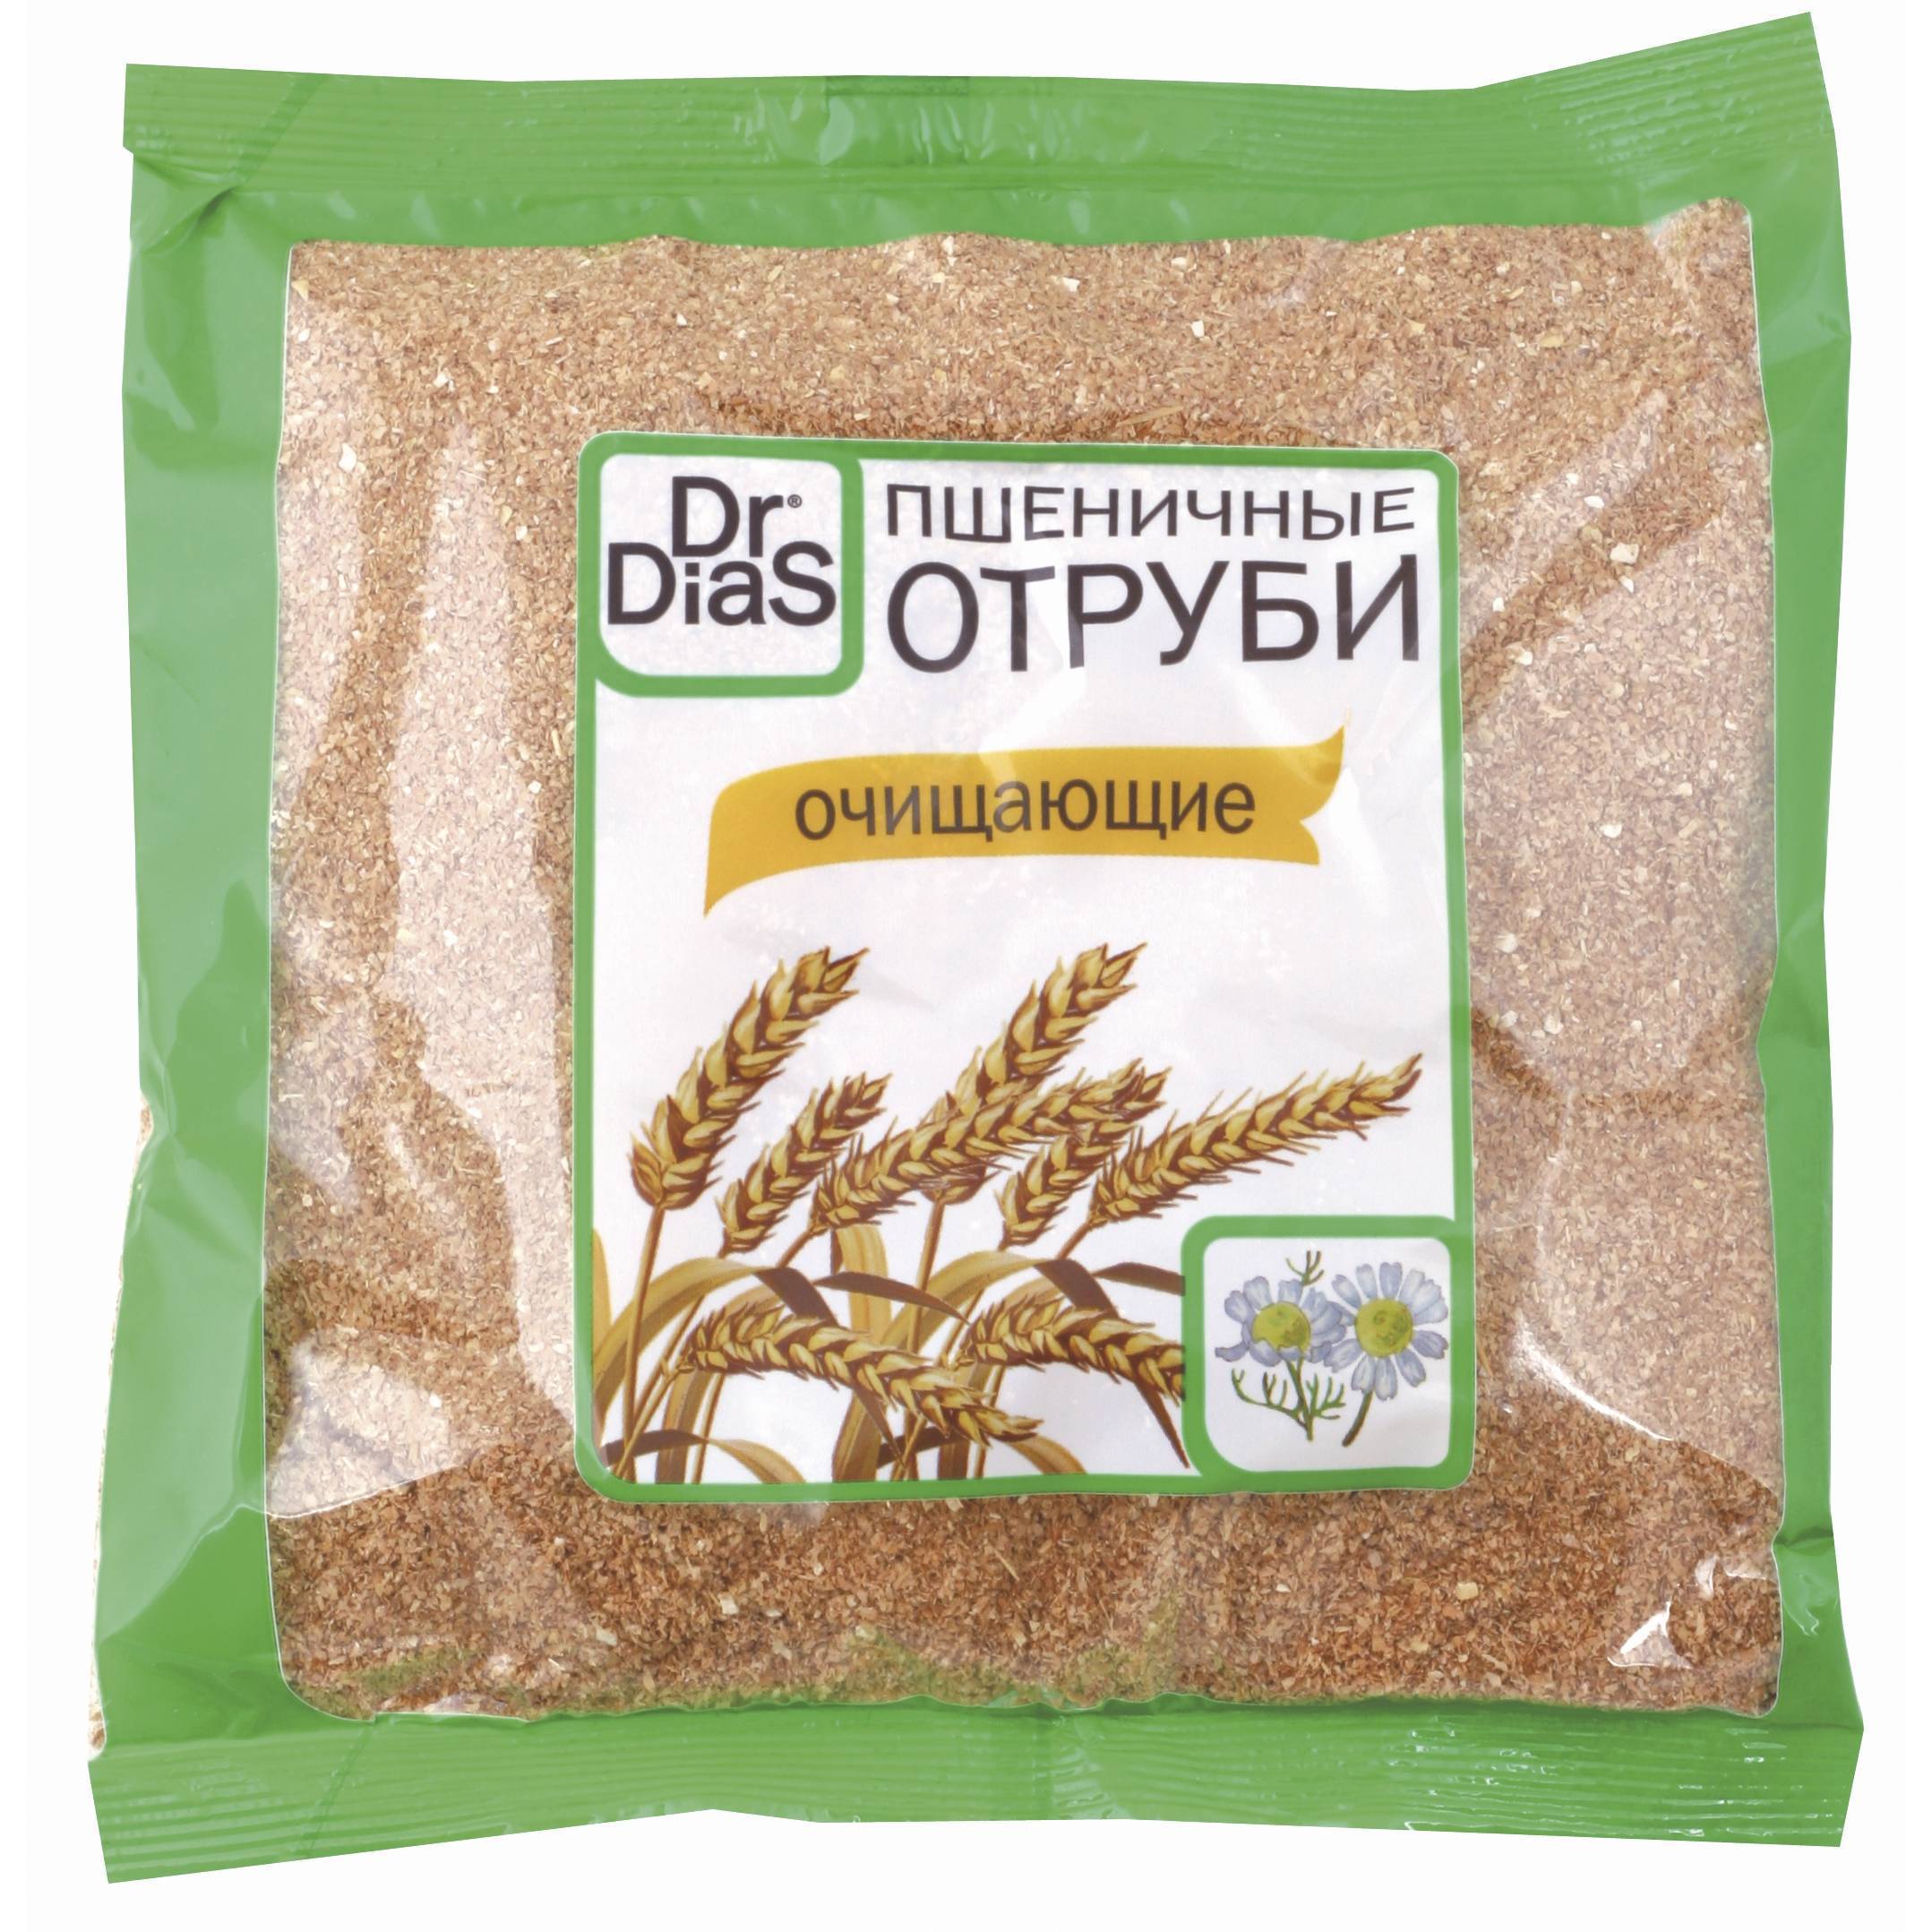 Чем полезны пшеничные отруби, отзывы